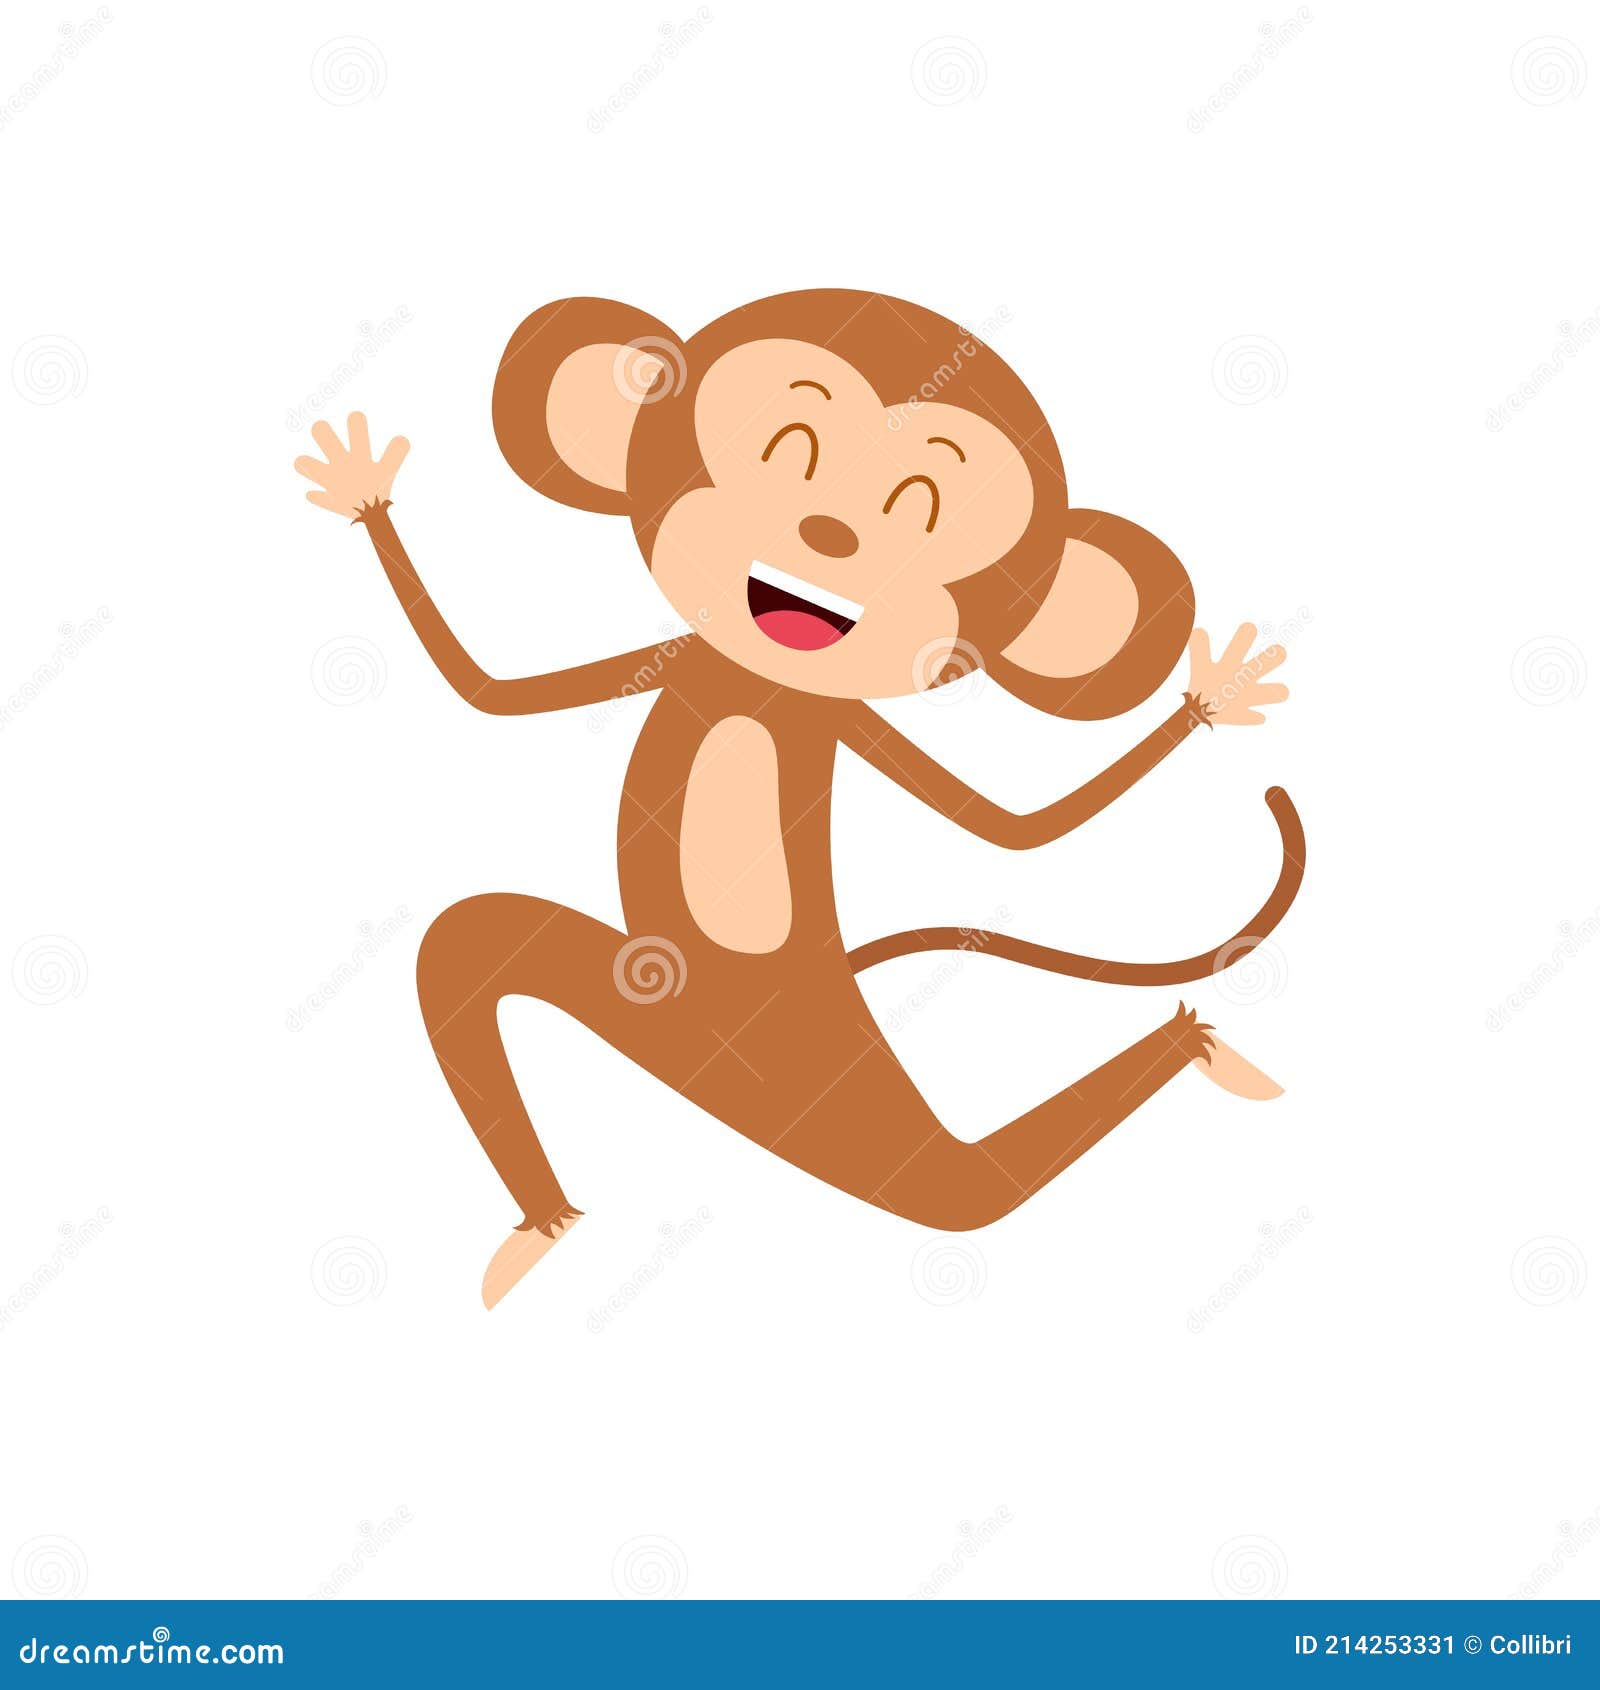 Macaco de desenho animado ou chimpanzé fotomural • fotomurais sessão,  sentar-se, sorridente